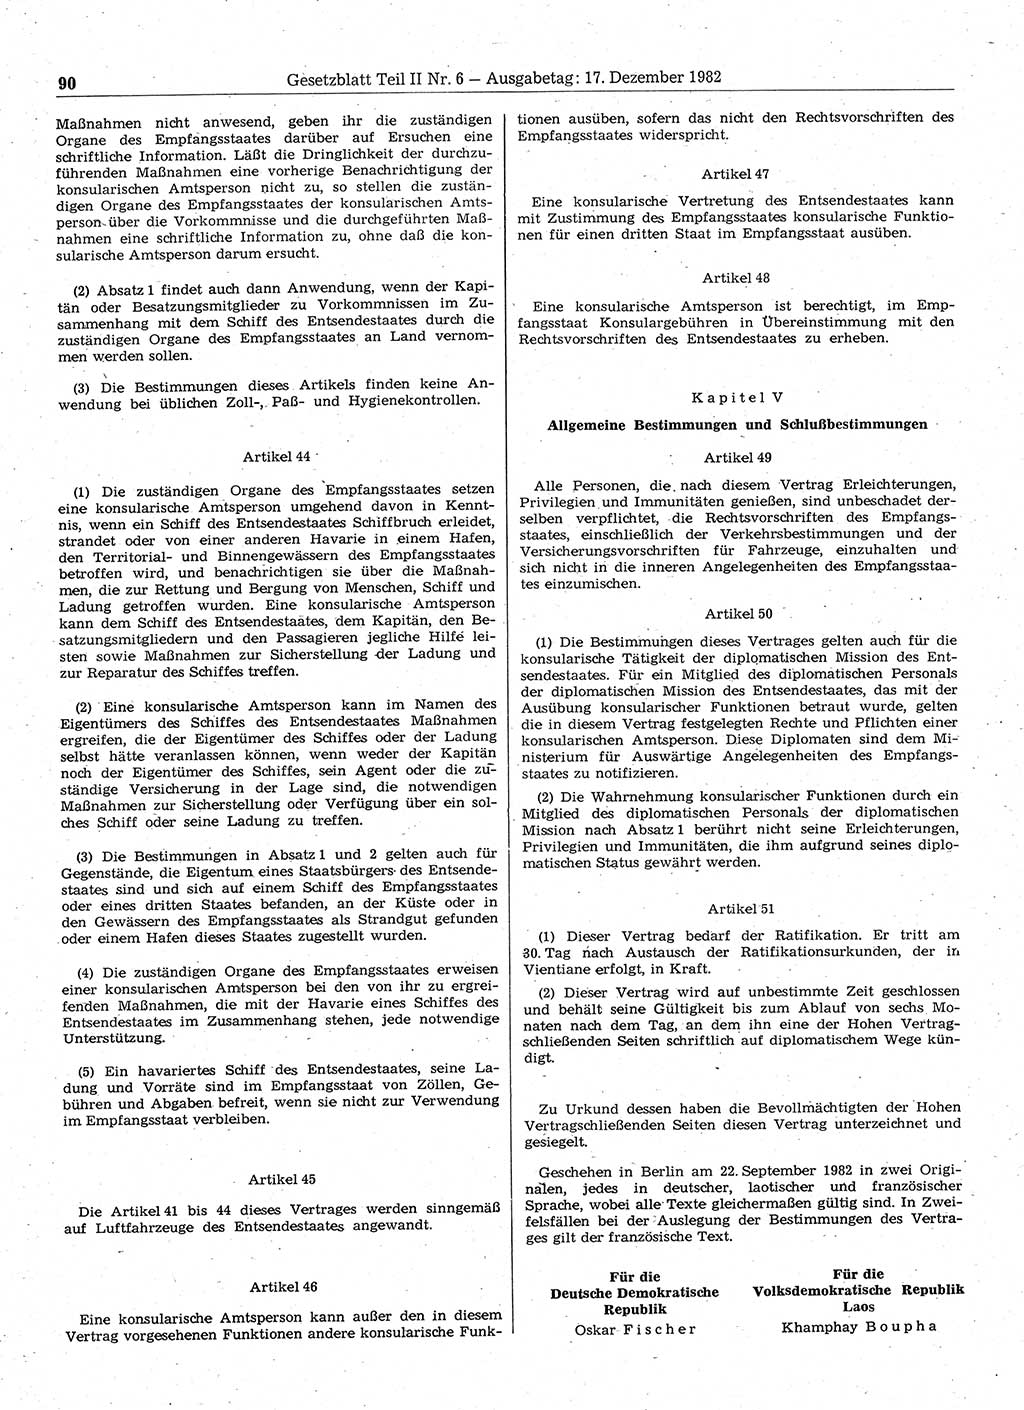 Gesetzblatt (GBl.) der Deutschen Demokratischen Republik (DDR) Teil ⅠⅠ 1982, Seite 90 (GBl. DDR ⅠⅠ 1982, S. 90)